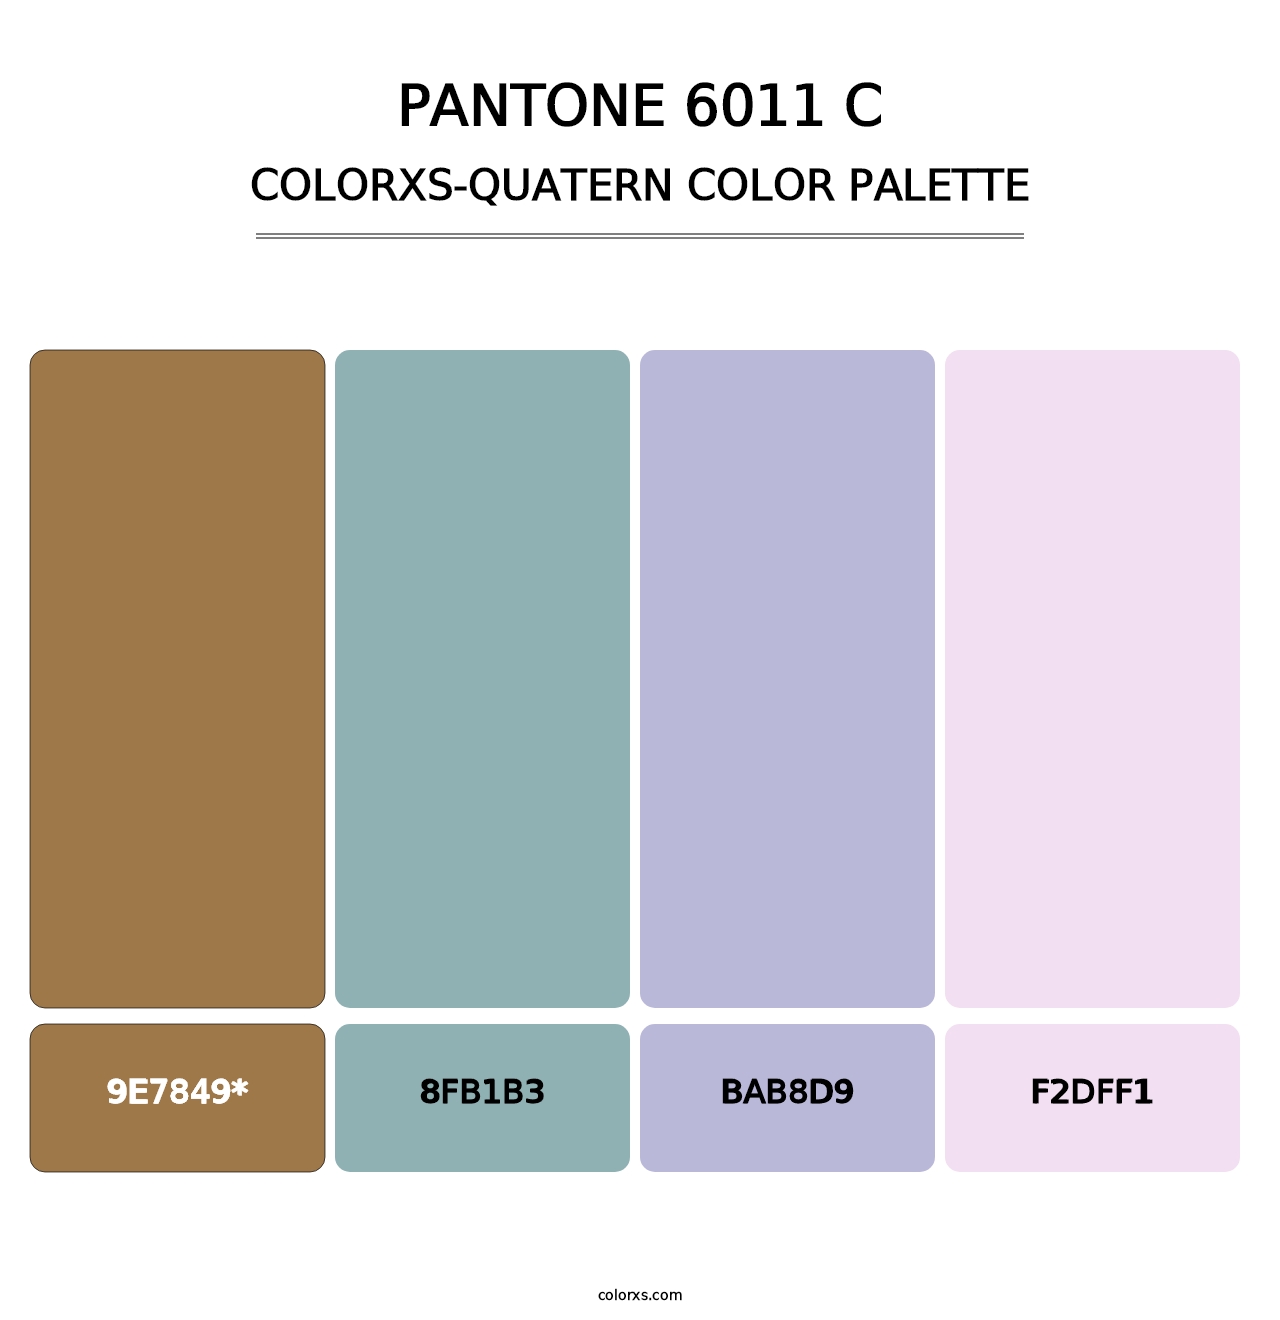 PANTONE 6011 C - Colorxs Quatern Palette